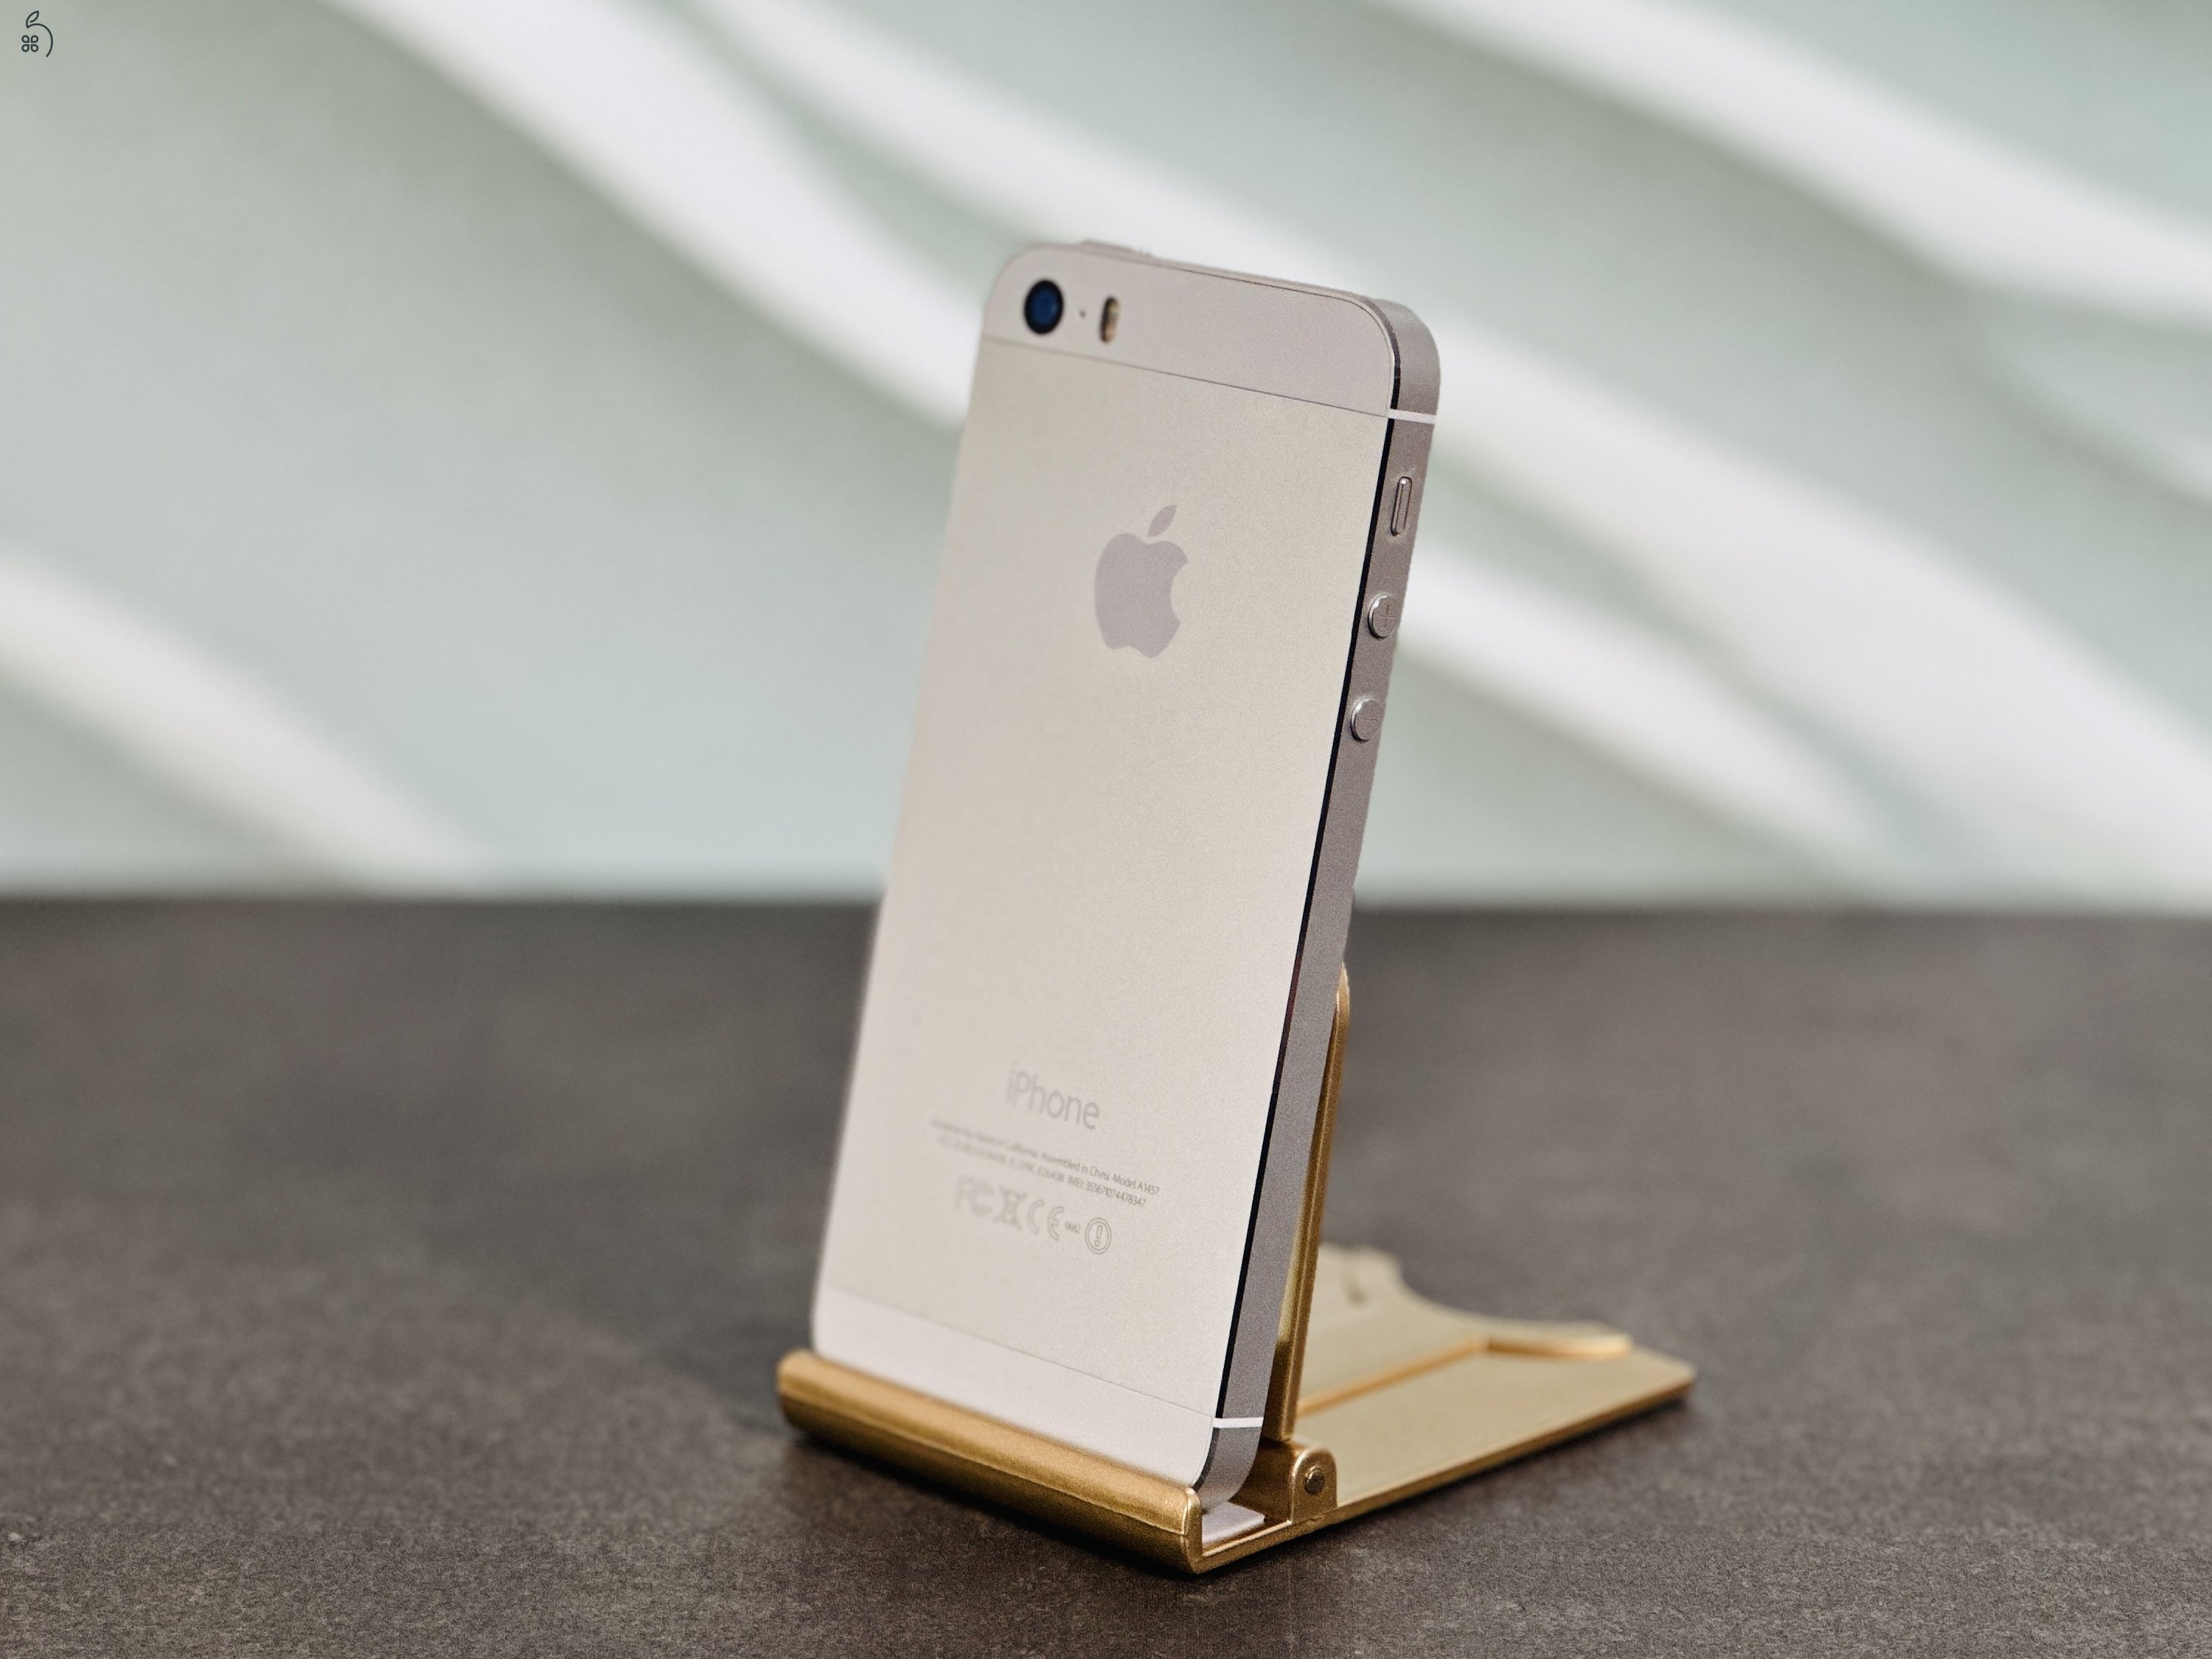 Eladó iPhone 5S 16 GB Silver szép állapotú - 12 HÓ GARANCIA - 7892